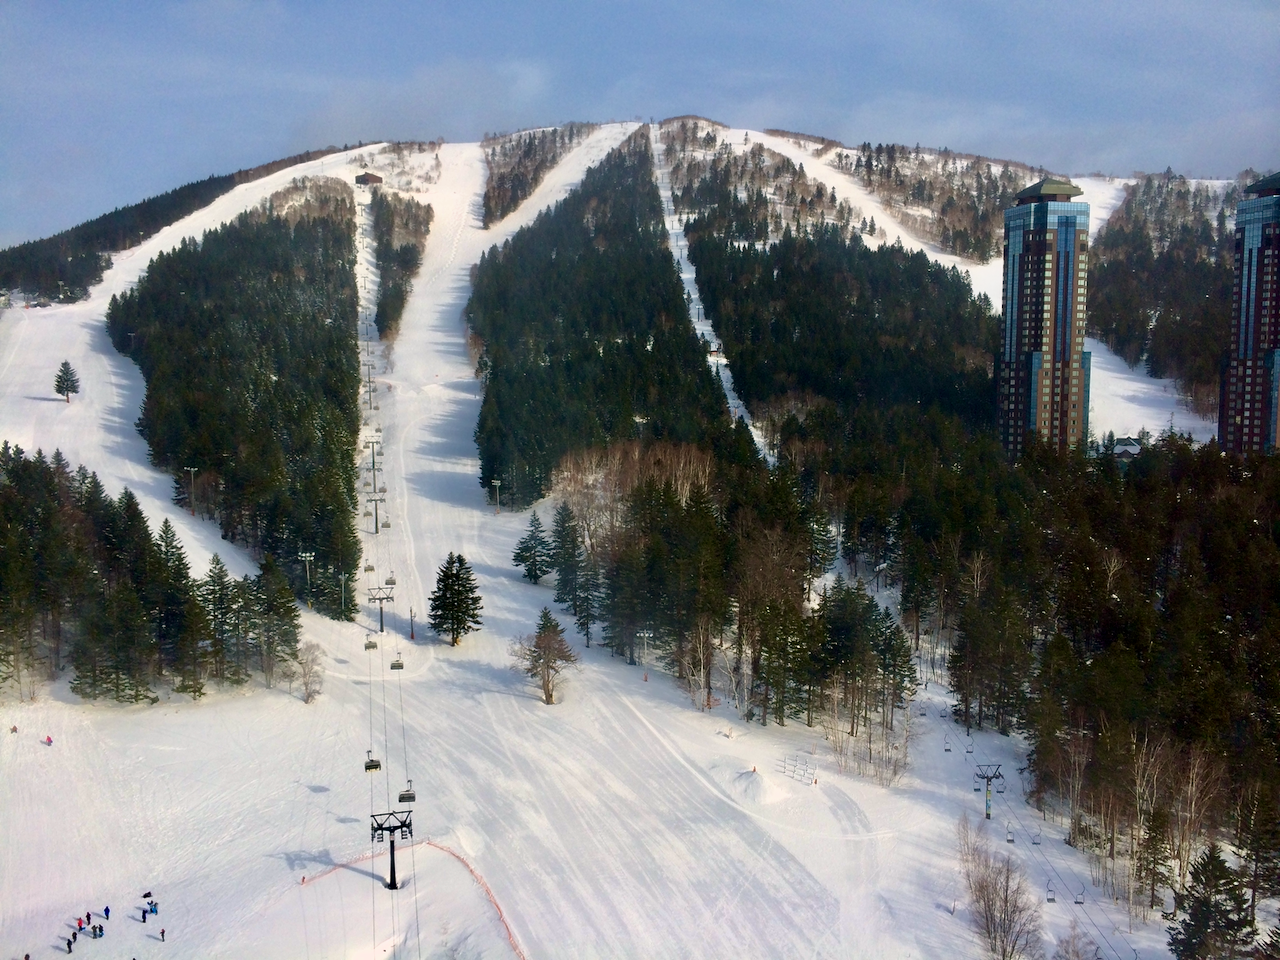 Tomamu Ski Resort